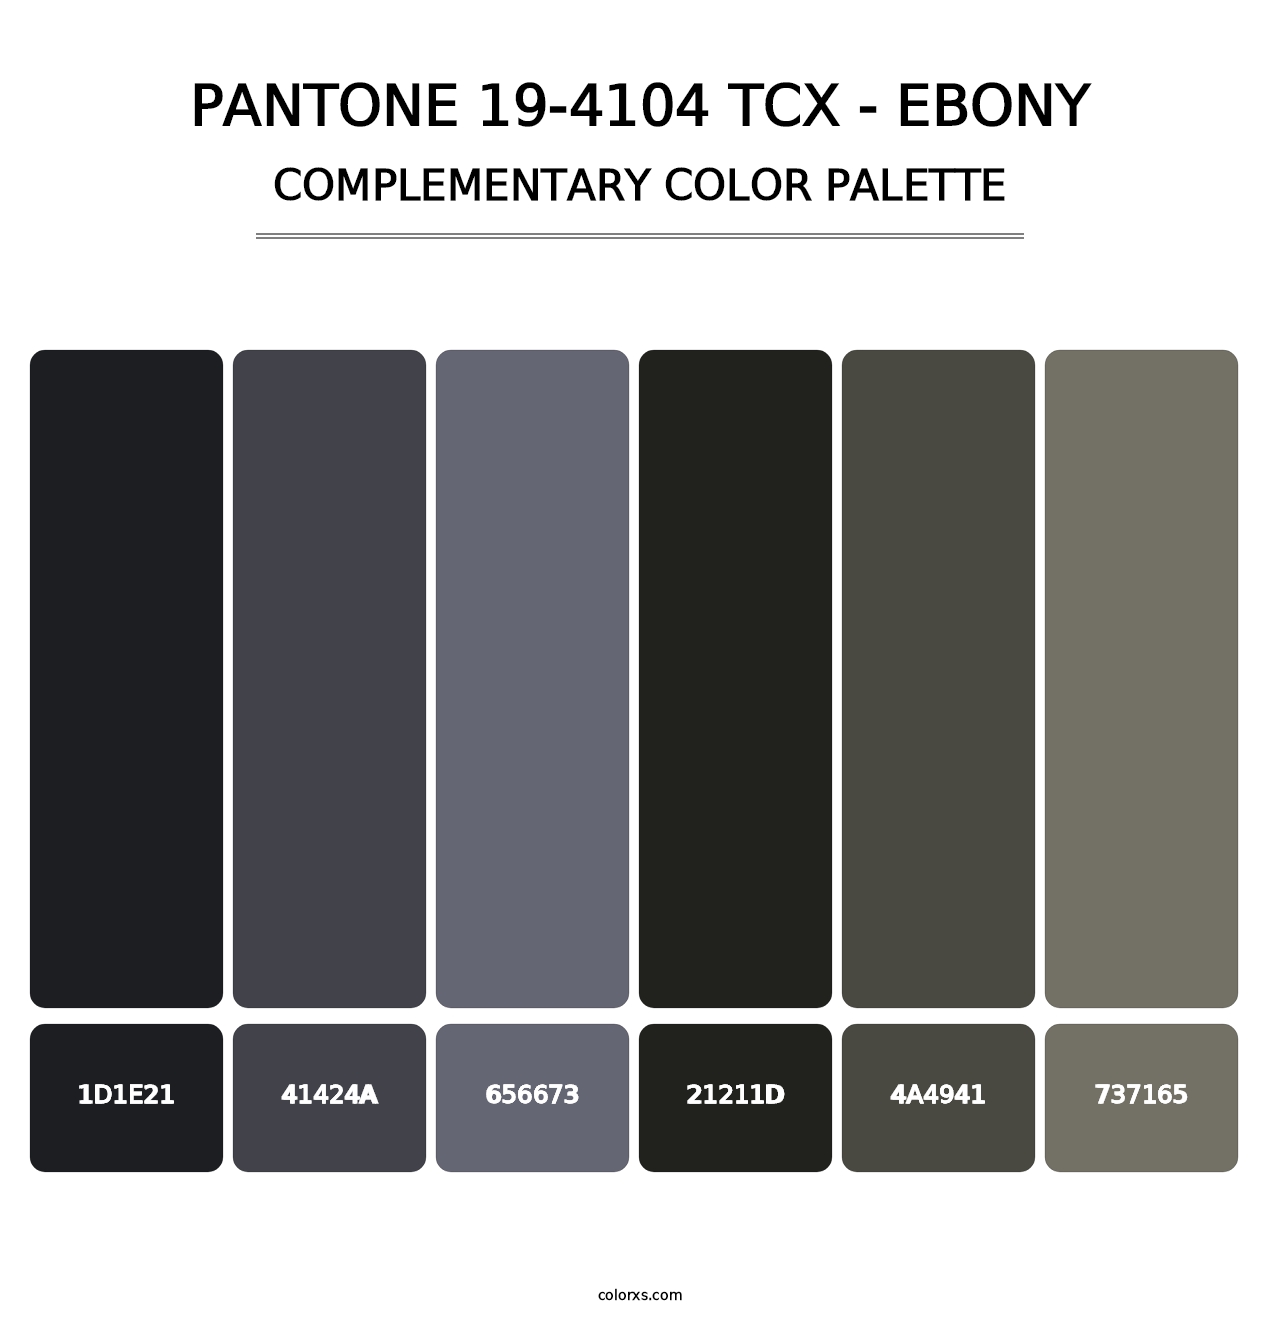 PANTONE 19-4104 TCX - Ebony - Complementary Color Palette